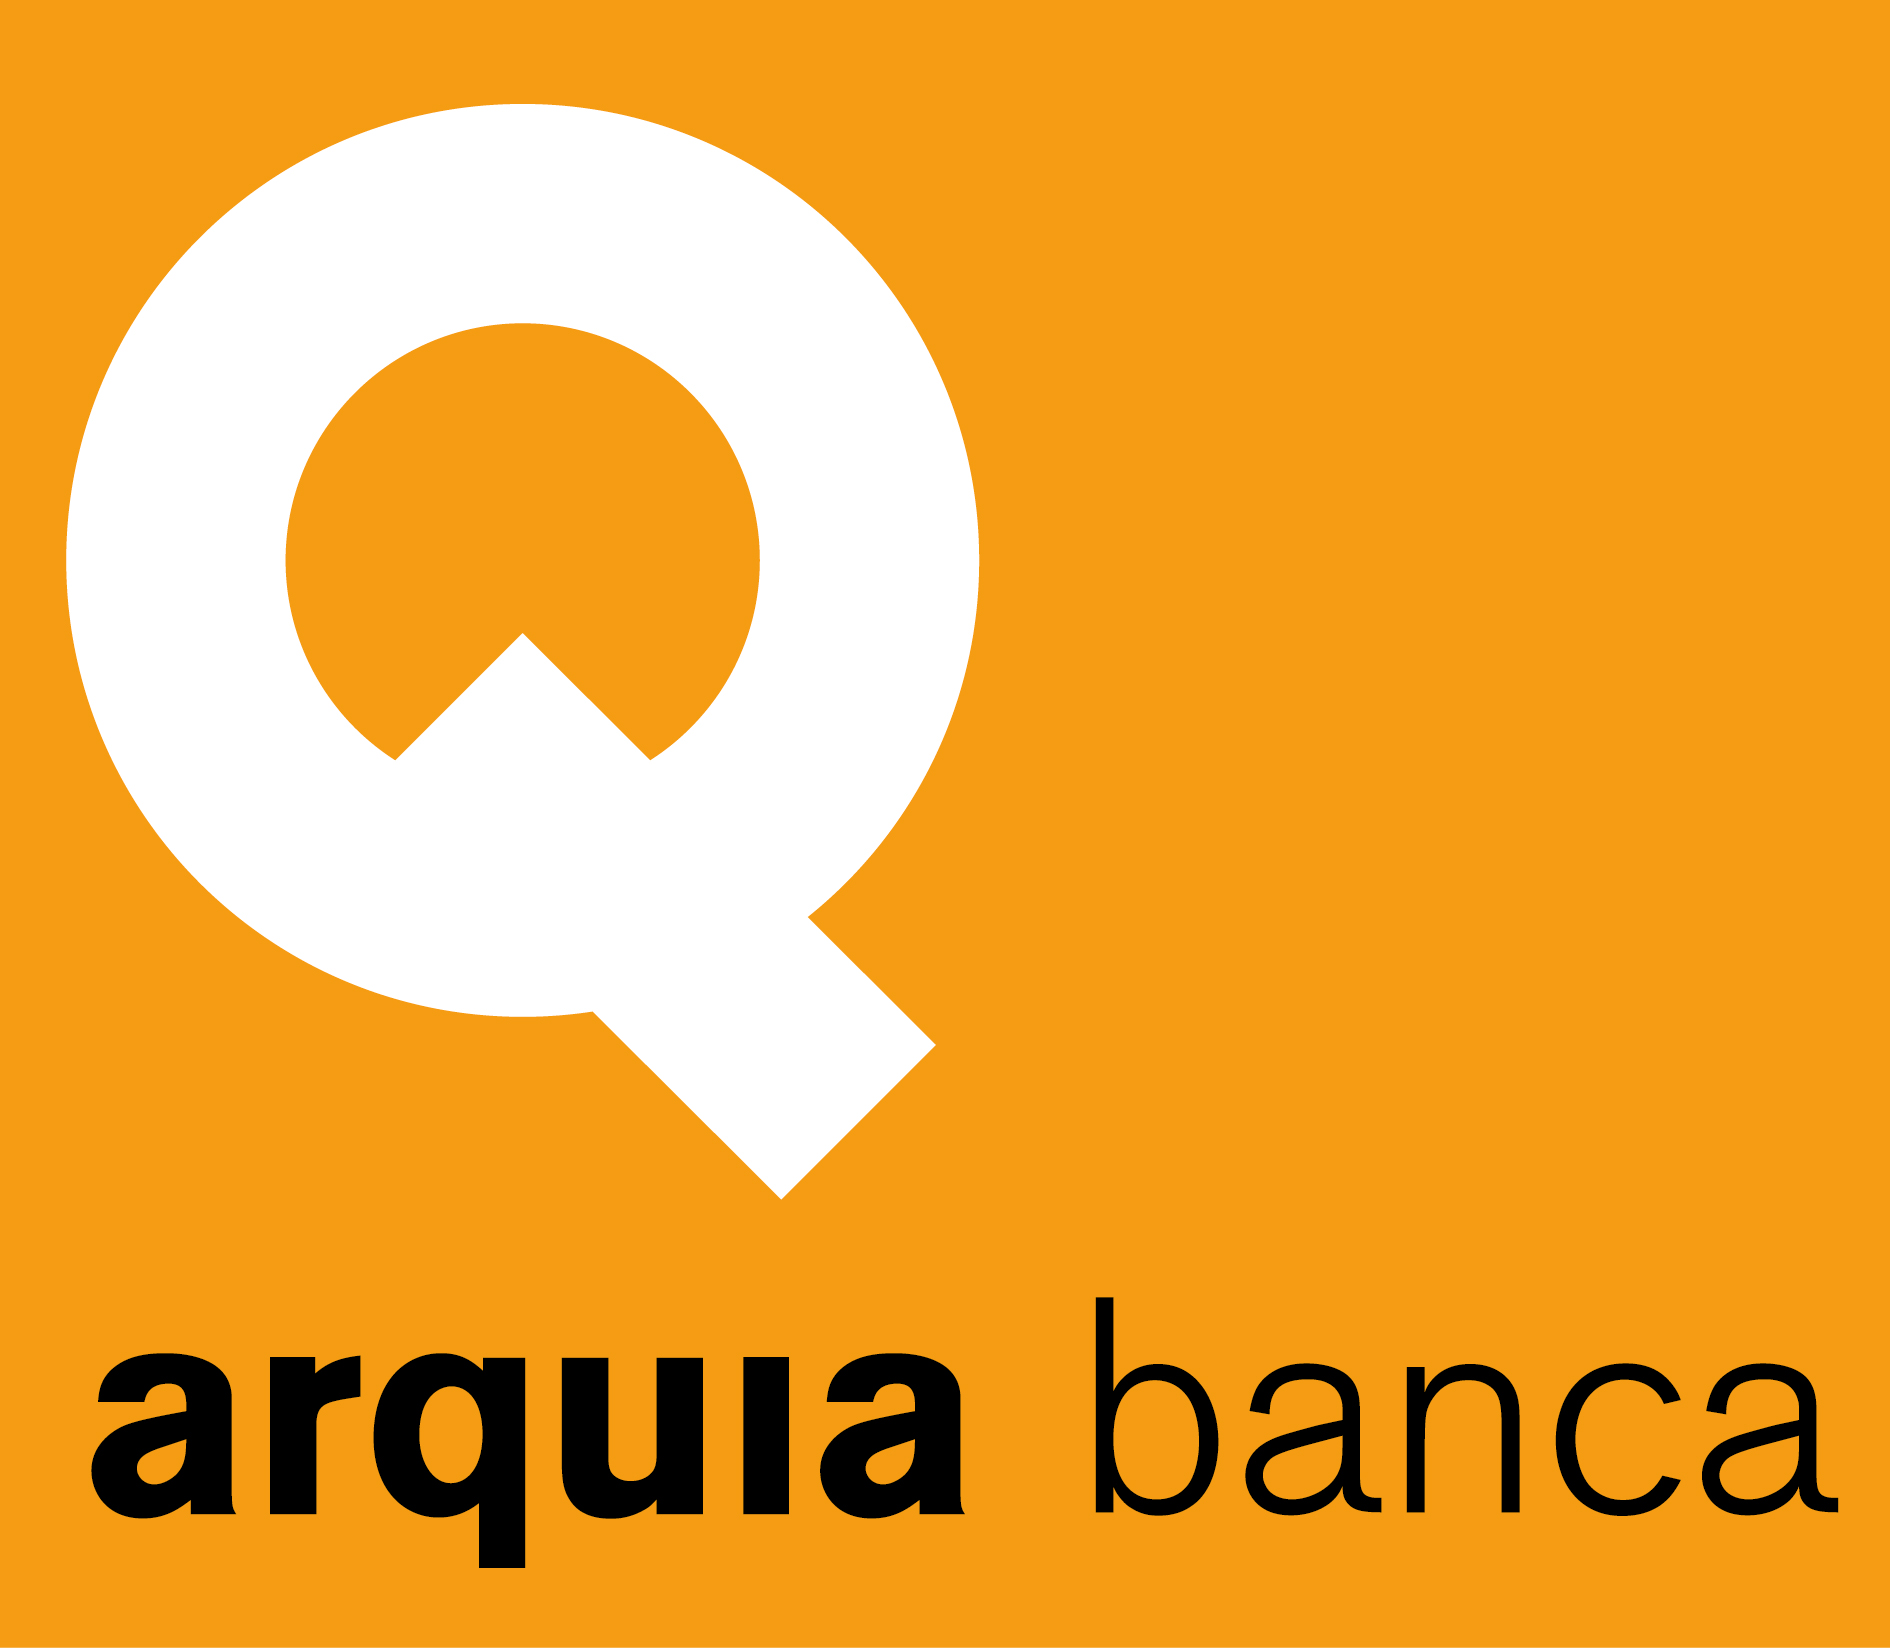 Arquia banca logo